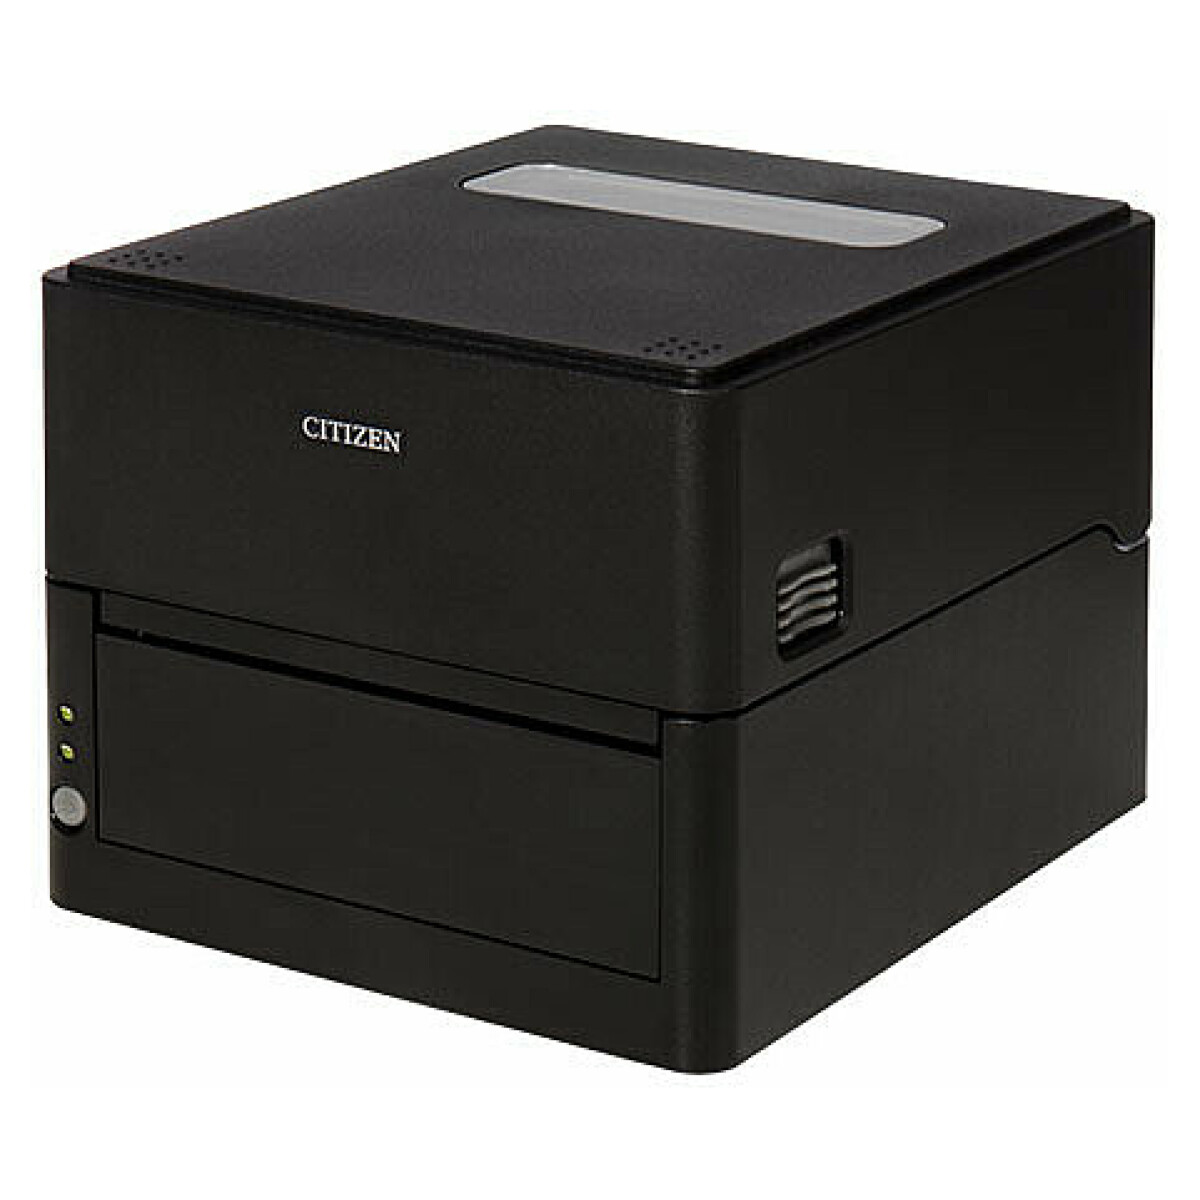 Citizen CL-E303 Labelprinter